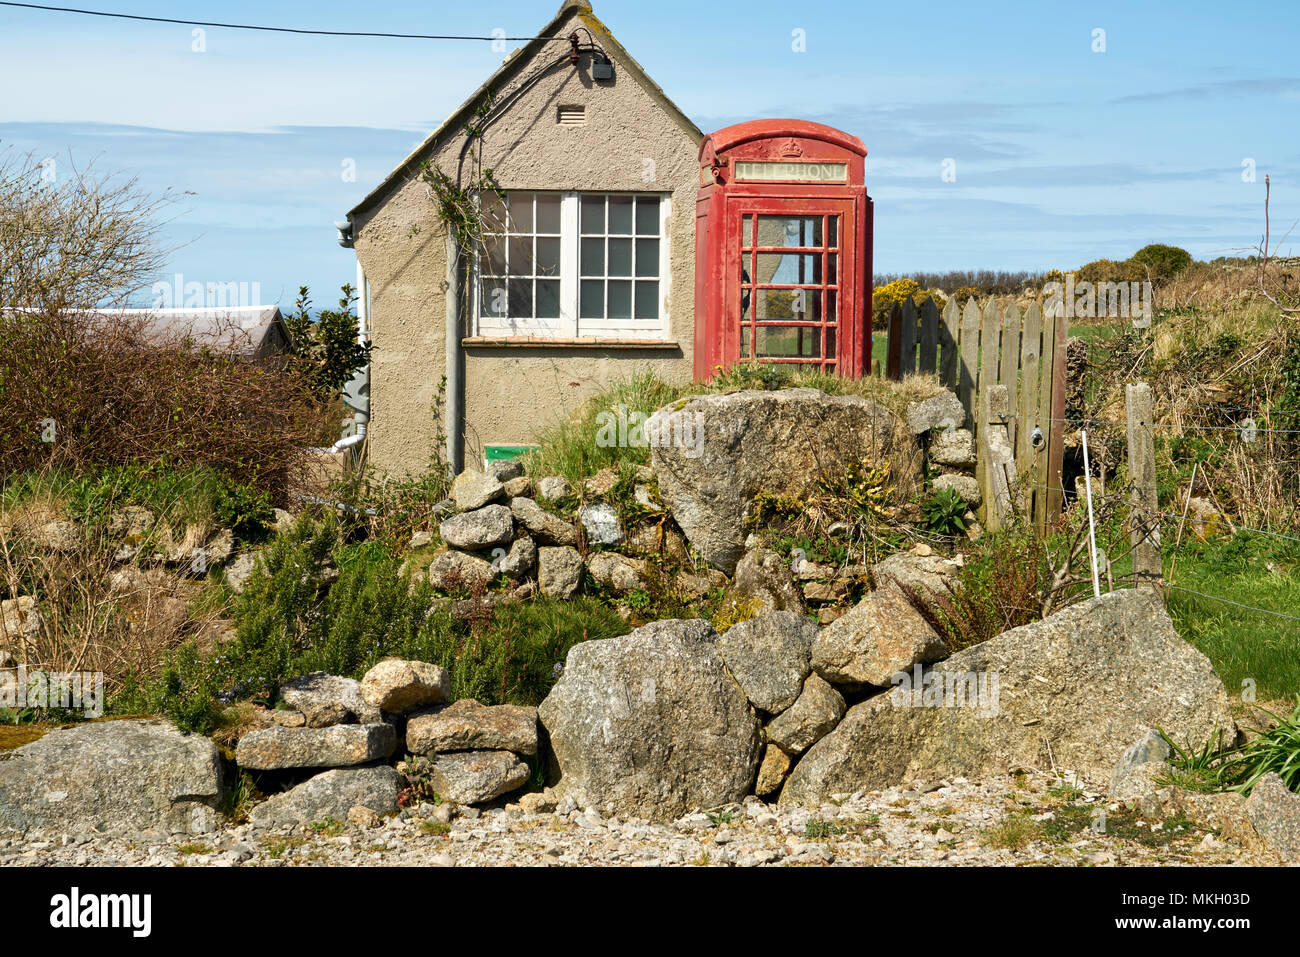 L'ancien central téléphonique de Zennor près de St Ives, Cornwall, UK. 7/4/2018. Aujourd'hui désaffecté. Utilisé pour connecter cette communauté rurale au monde extérieur Banque D'Images